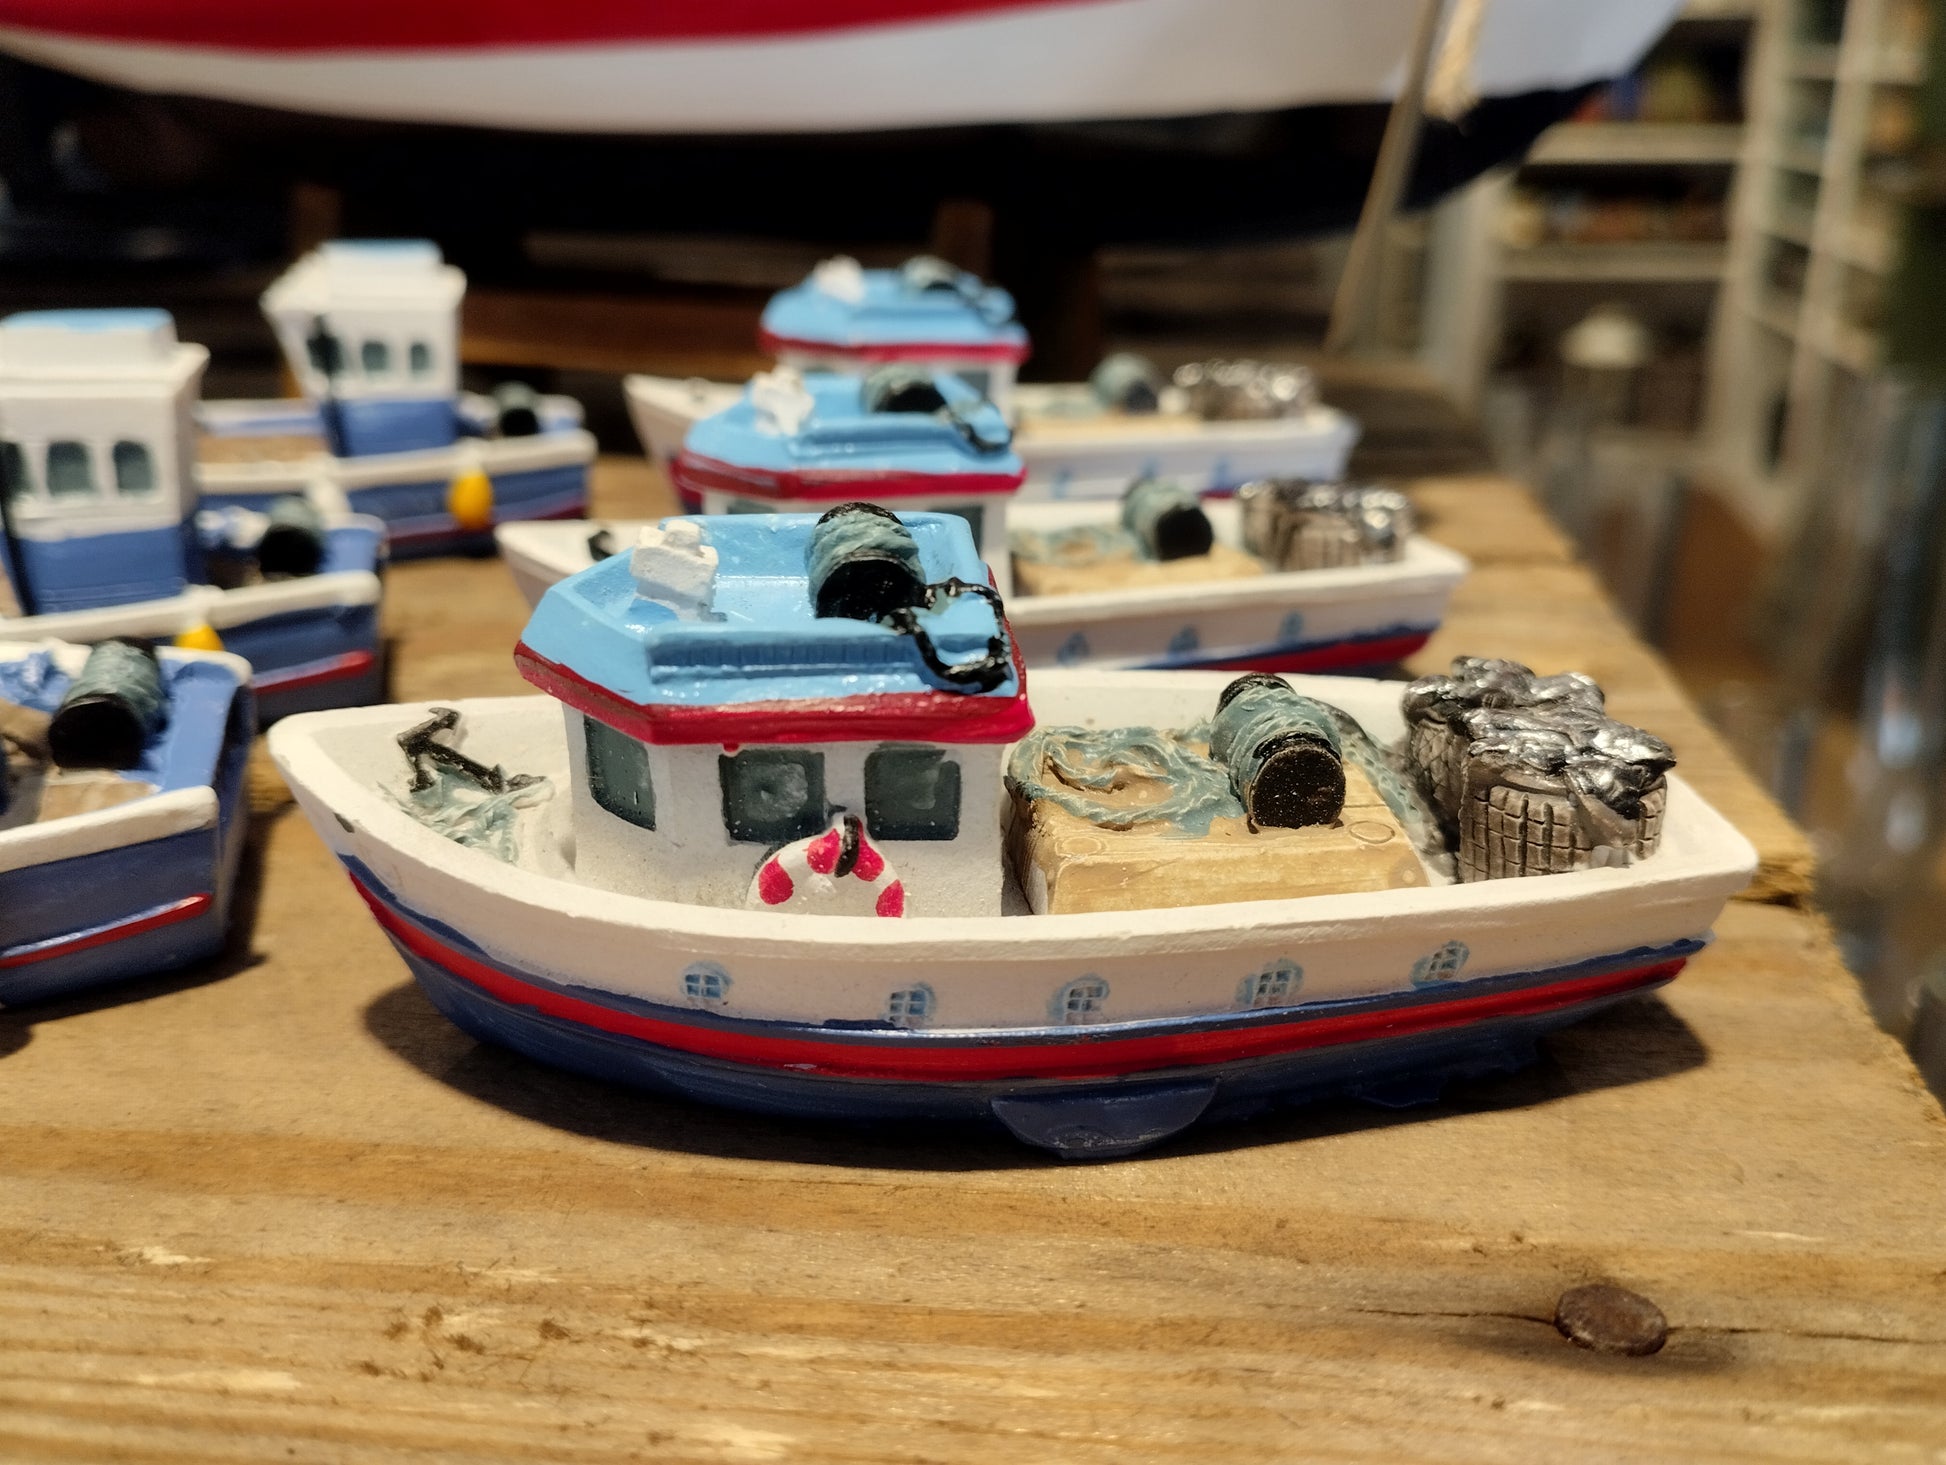 Fisketrålare - Små Modellbåt i olika design - Maritim Dekoration